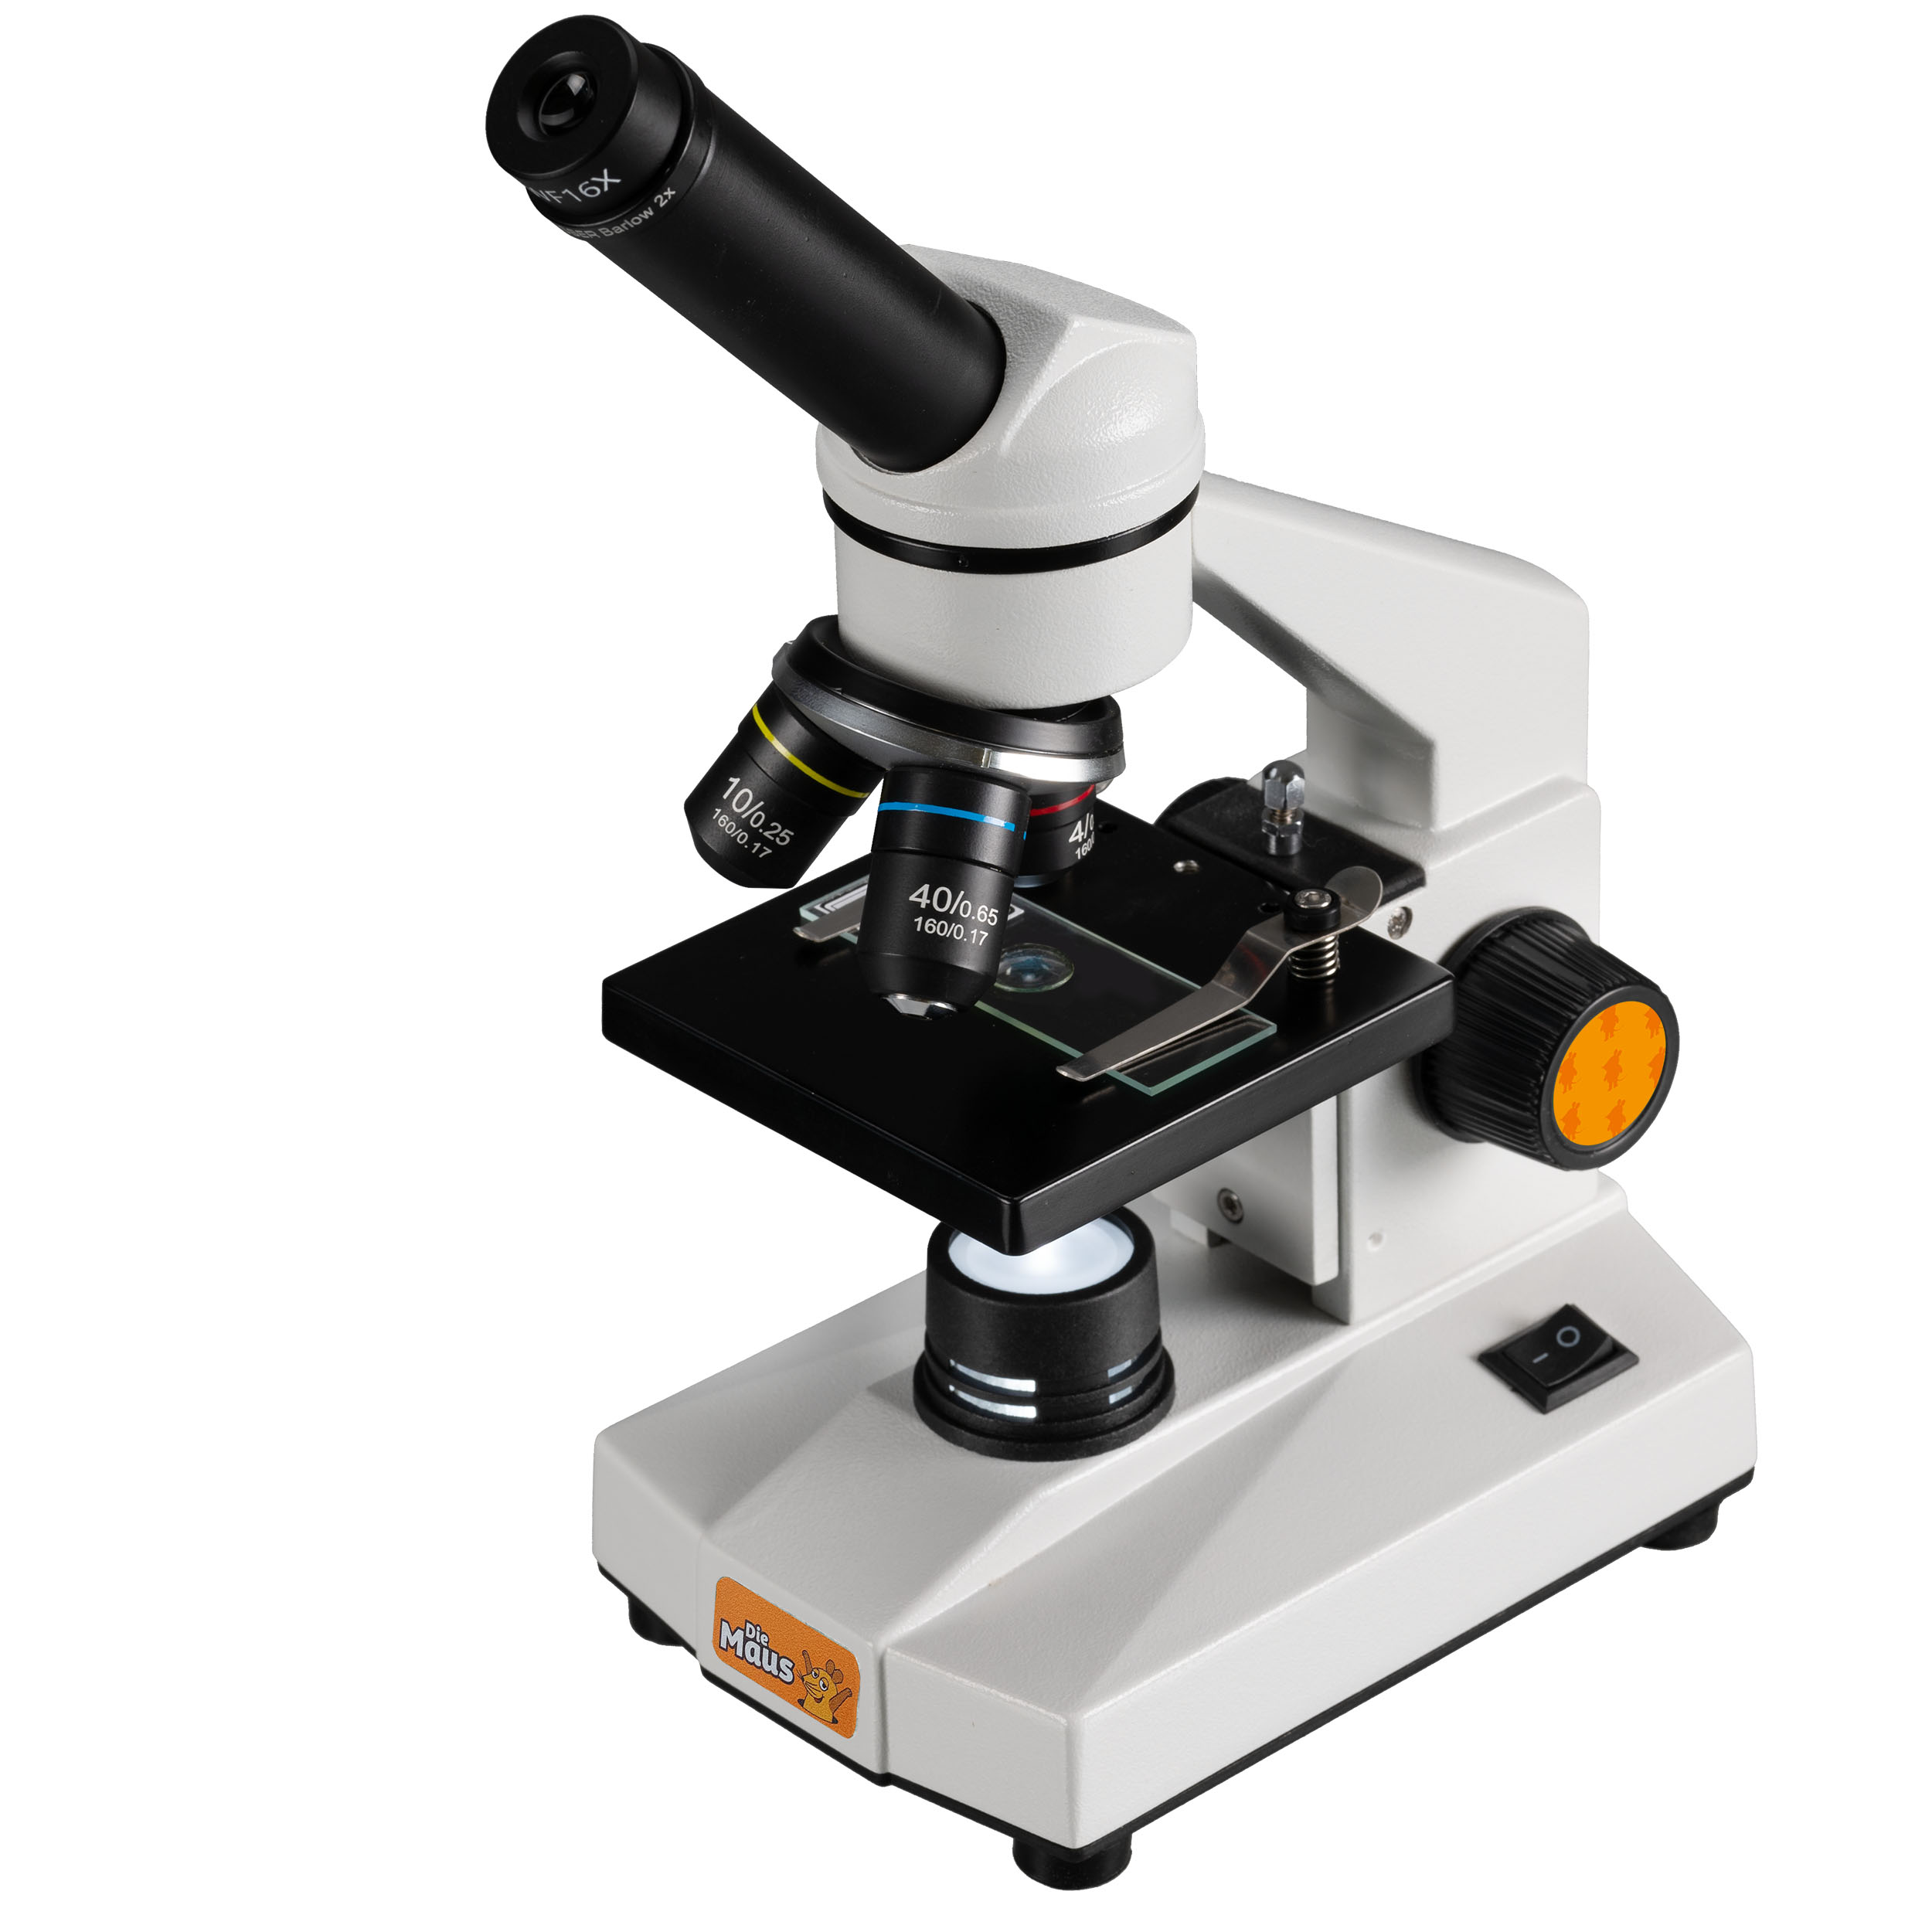 Die Maus Biolux Mikroskop 